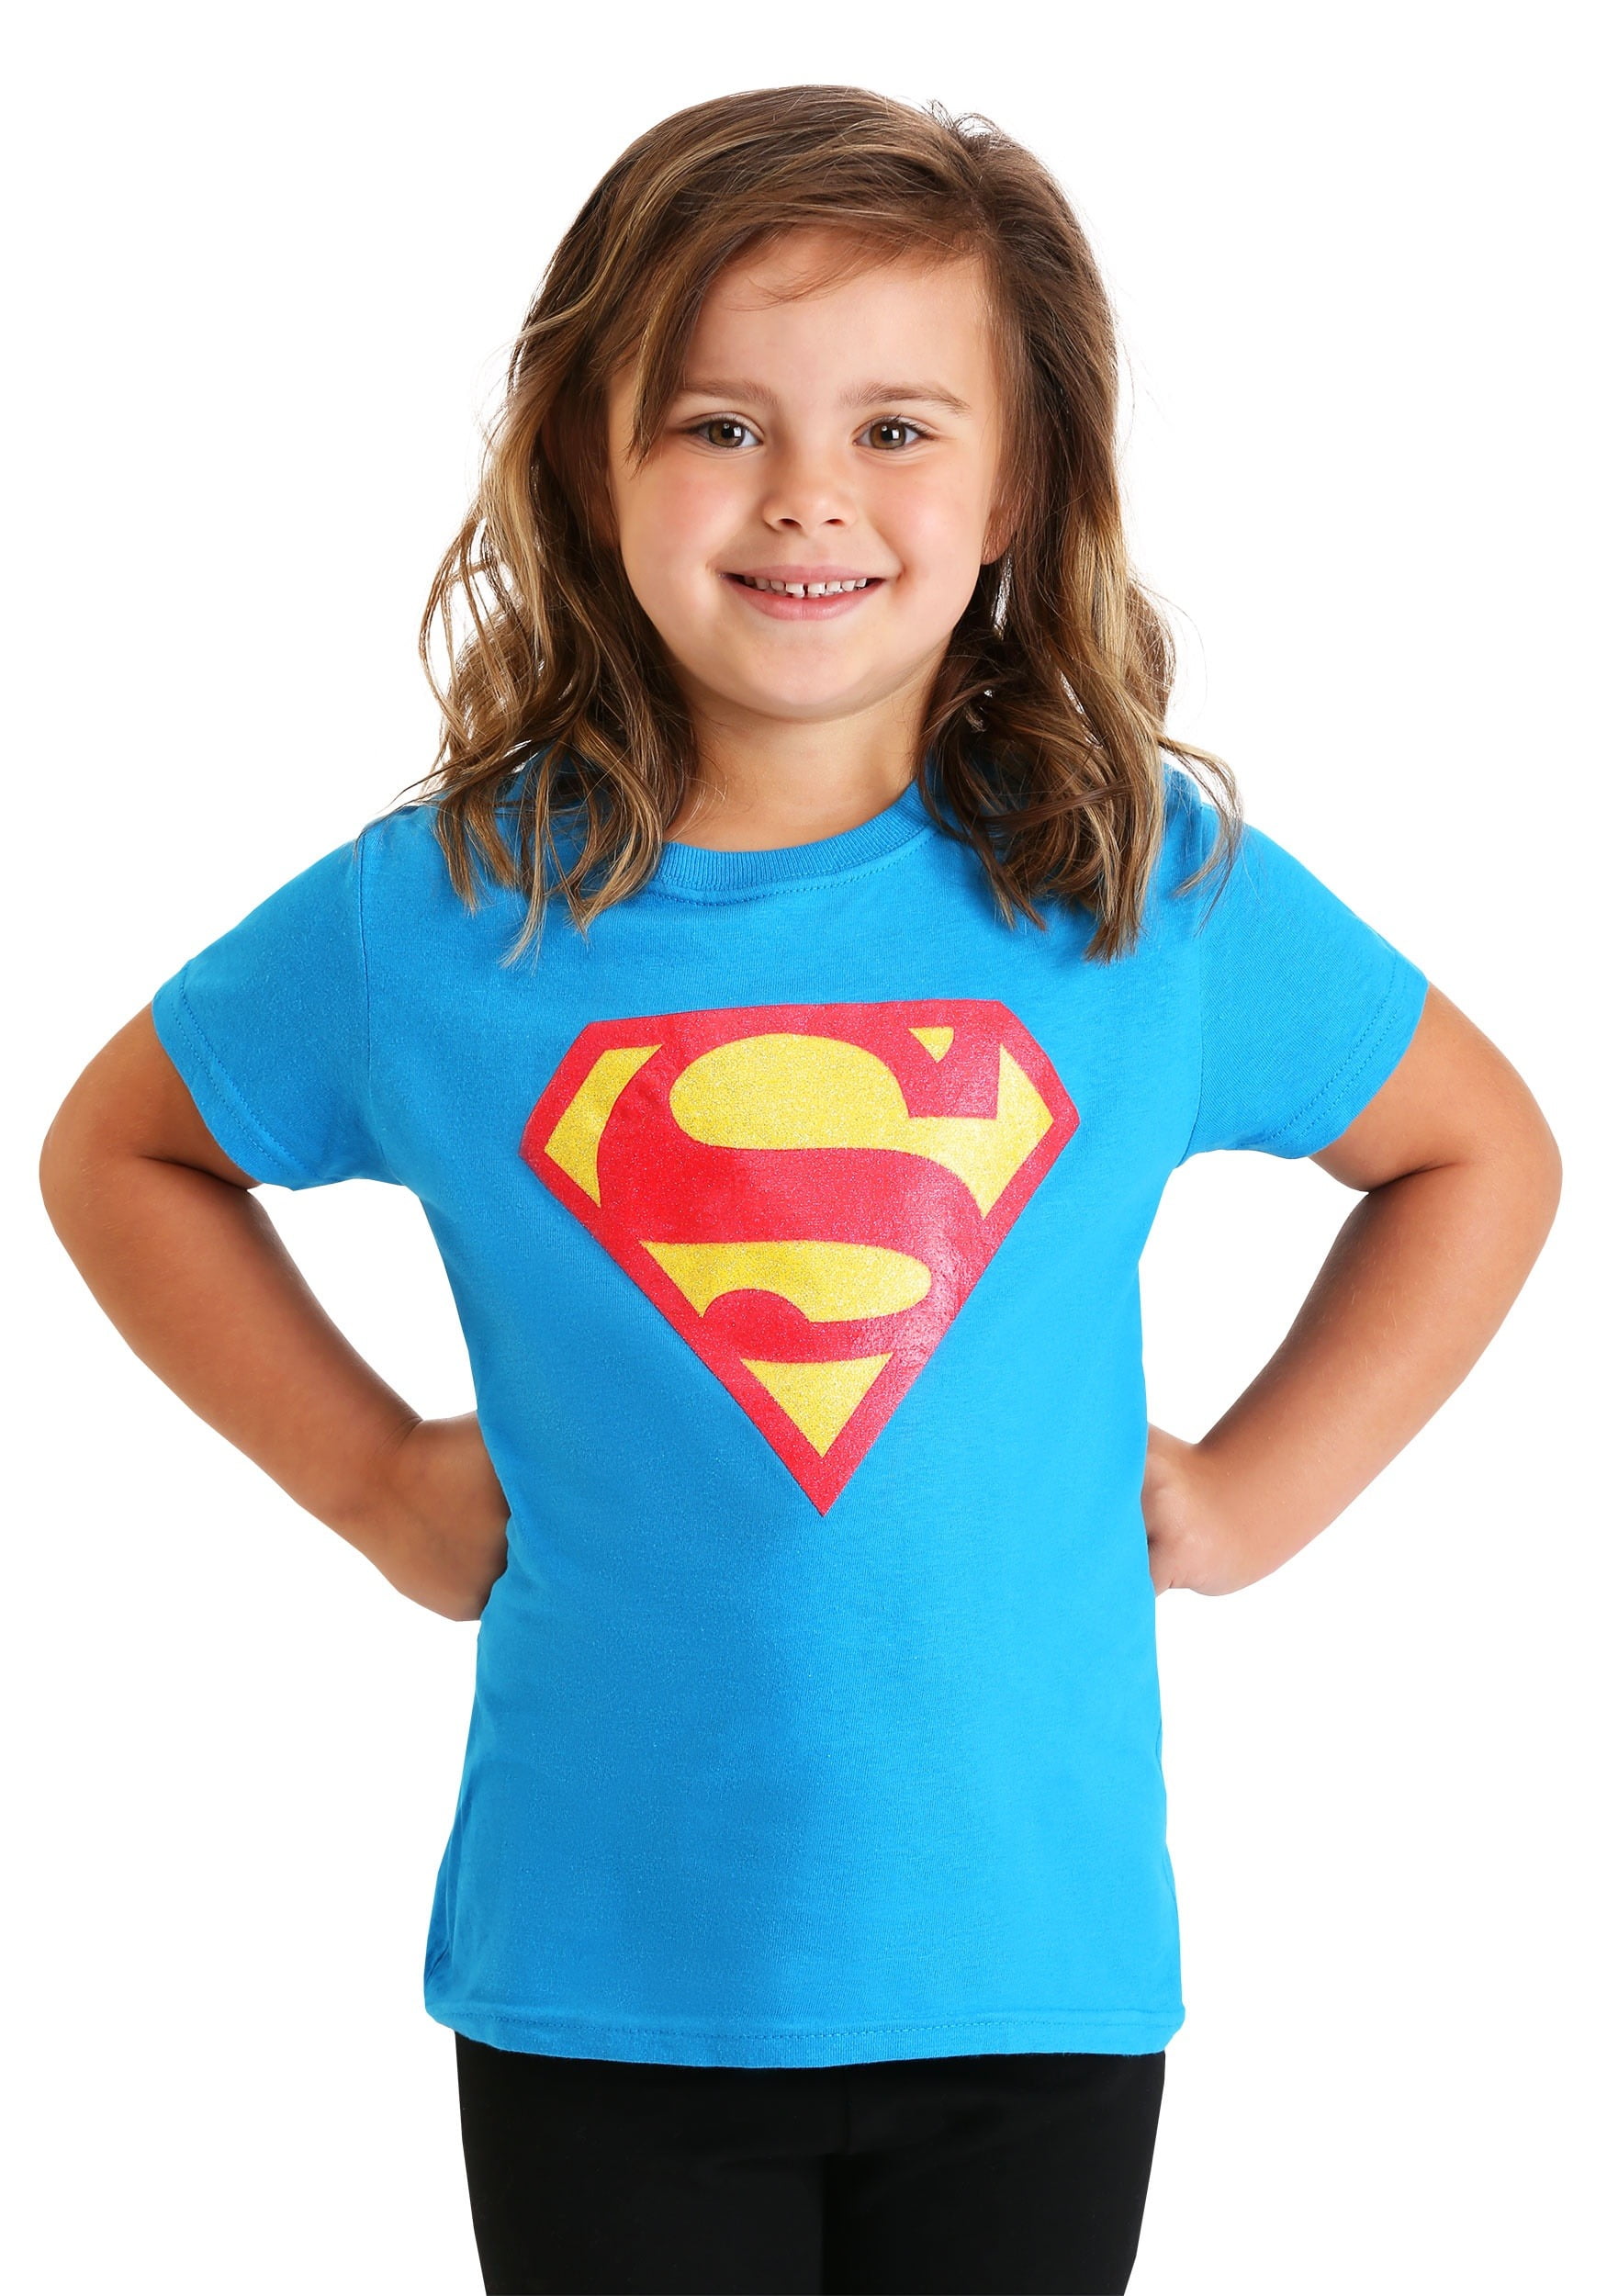 superman t shirt for girl